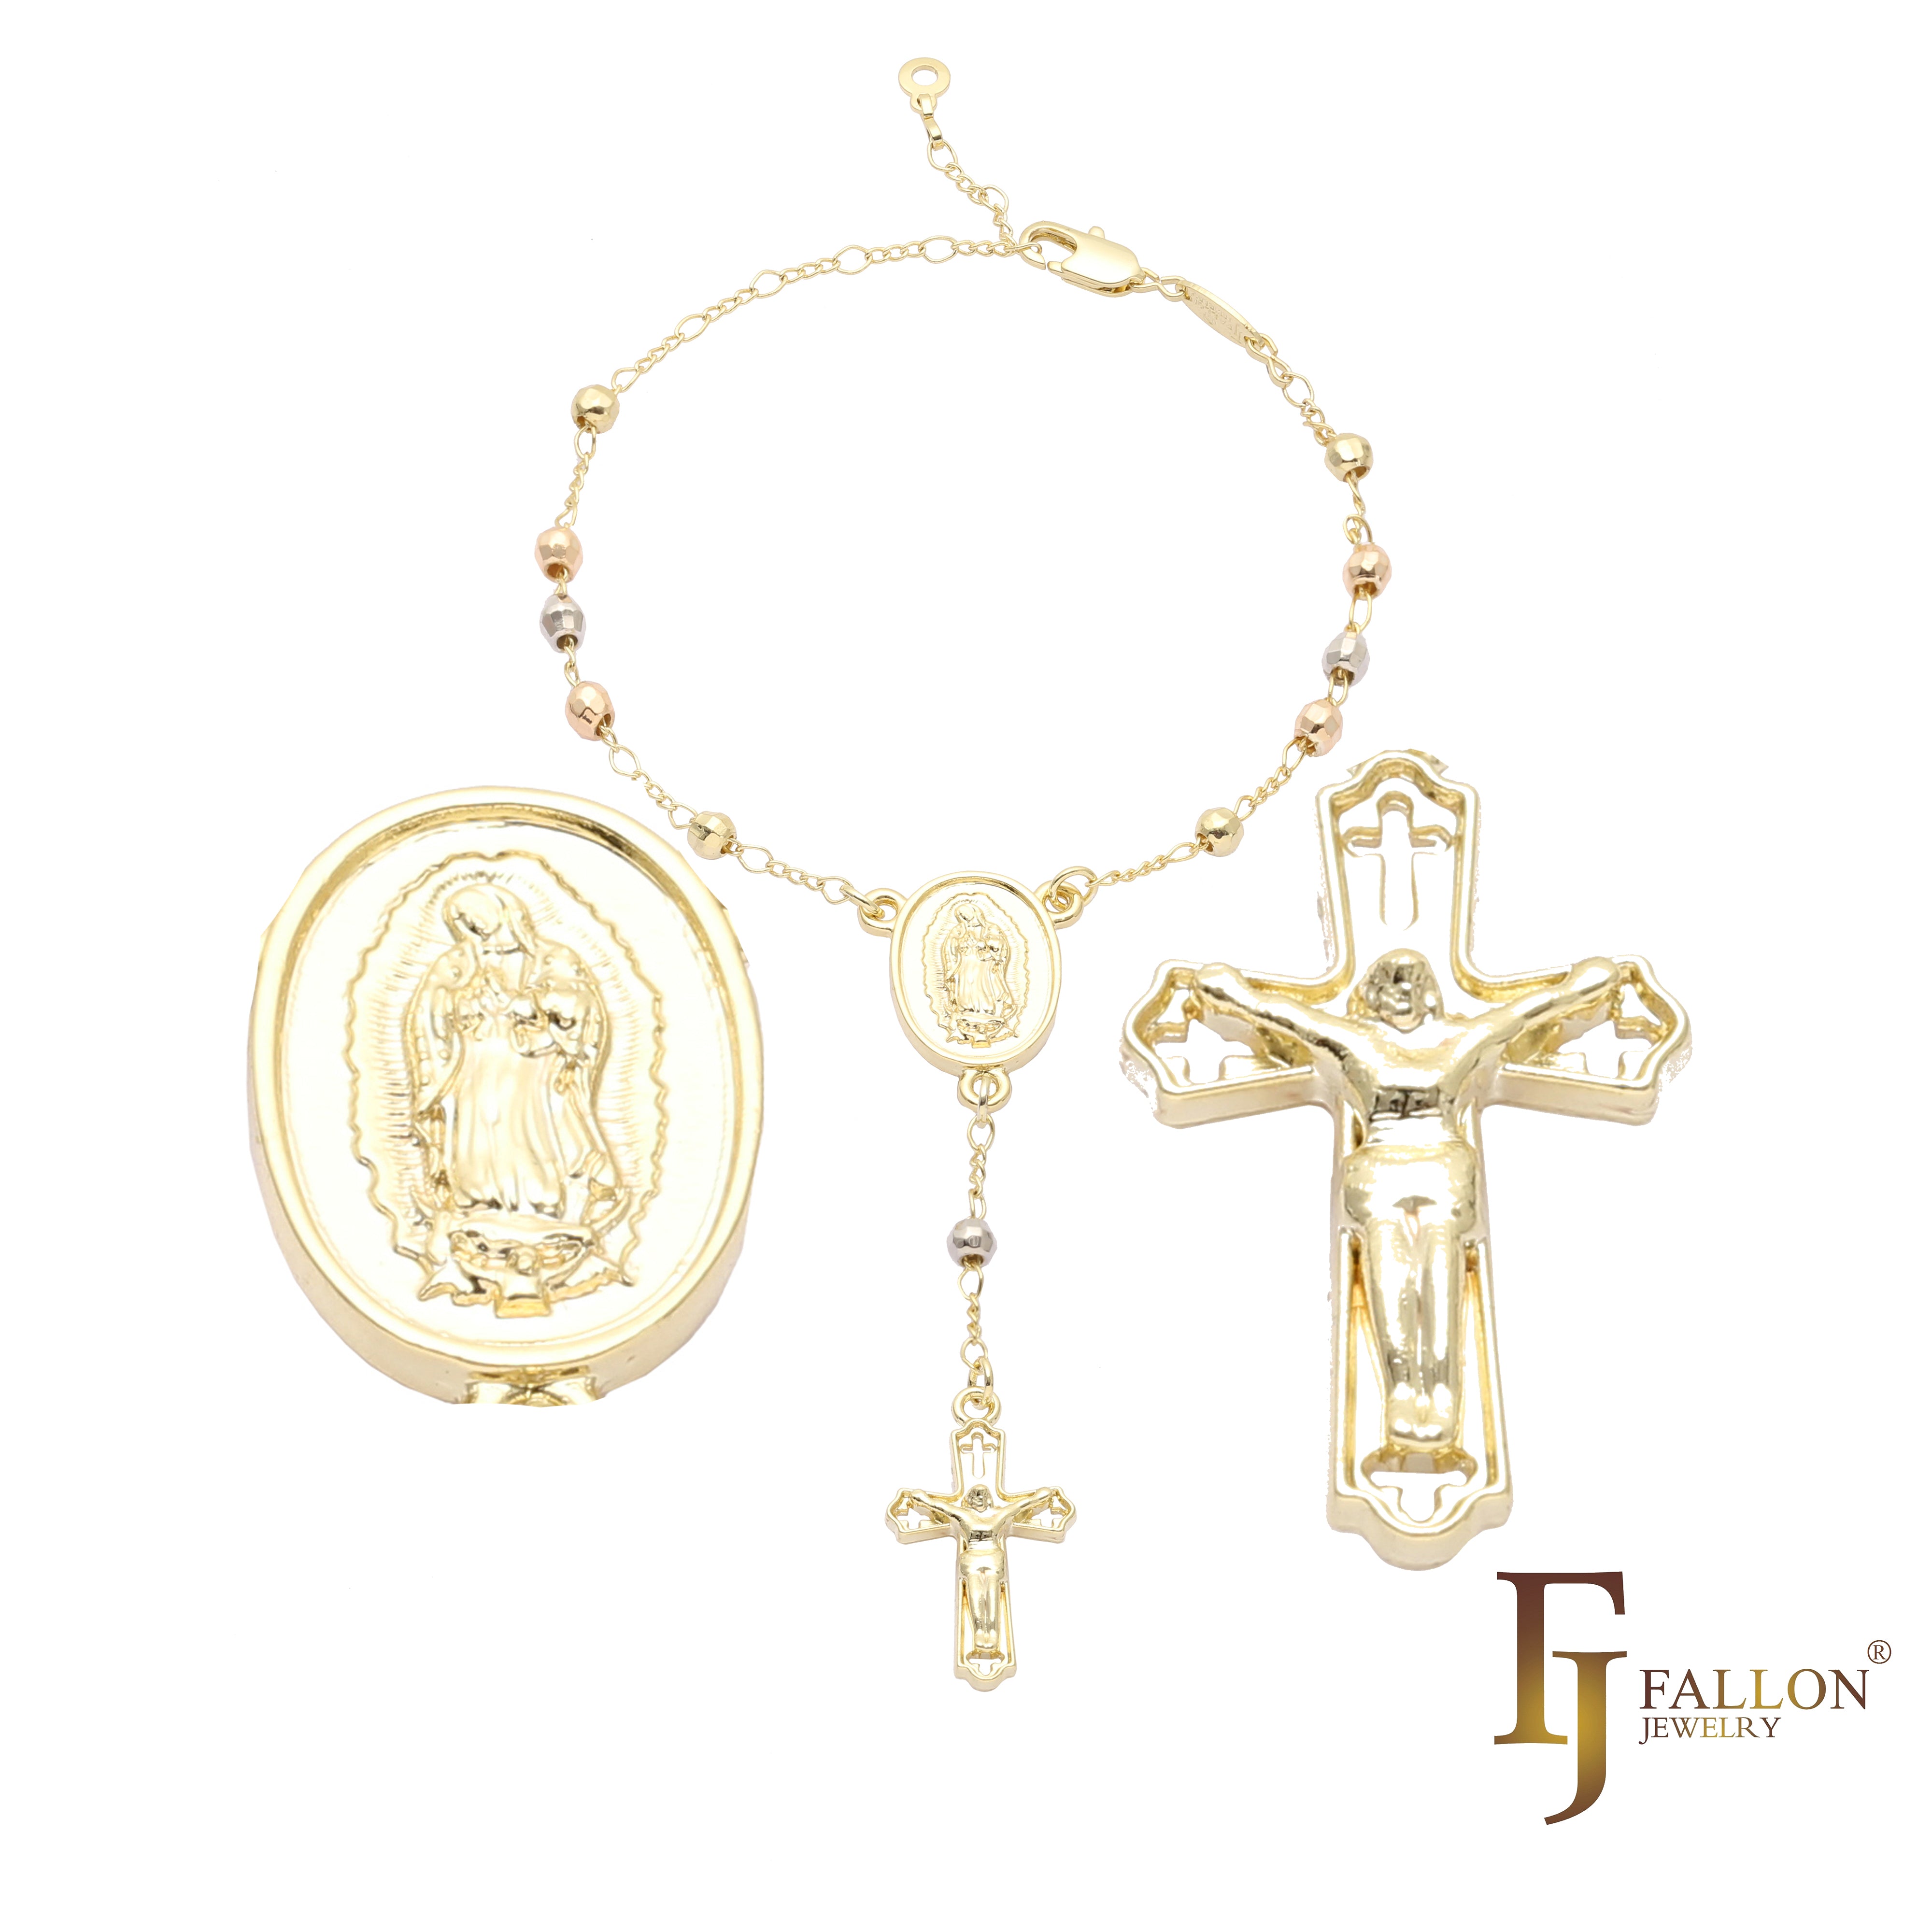 .Katholische Perlen-Rosenkranz-Halskette der italienischen Jungfrau von Guadalupe, vergoldet mit 18 Karat Gold, Wei?gold, 14 Karat Gold, zwei- und dreifarbig